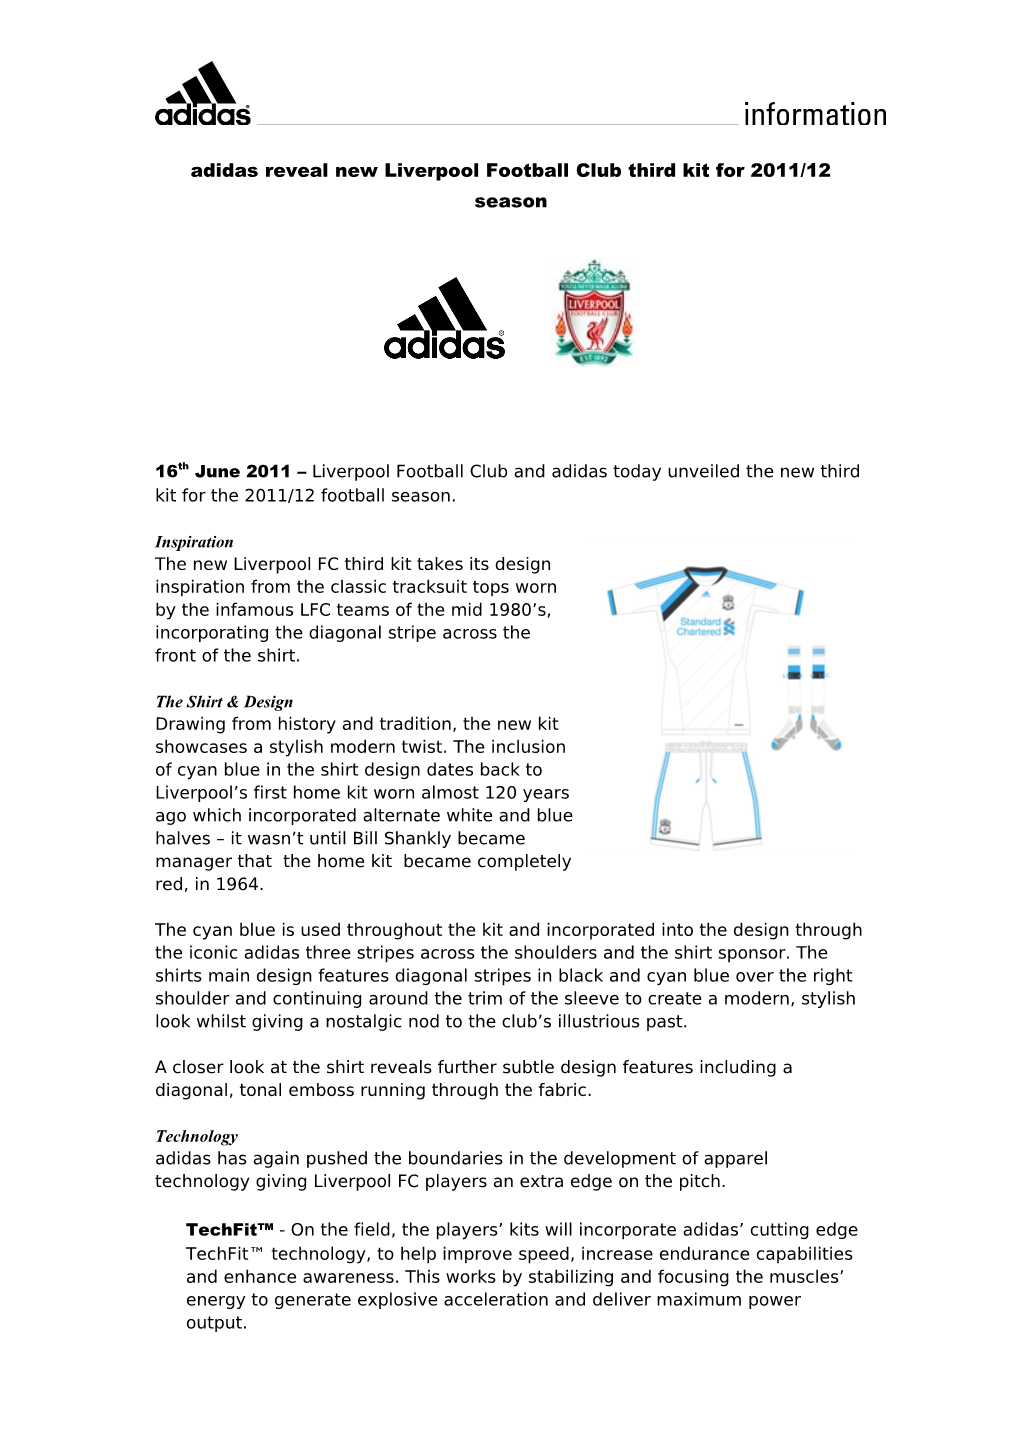 Adidas Reveal New Liverpool Football Club Third Kit for 2011/12 Season